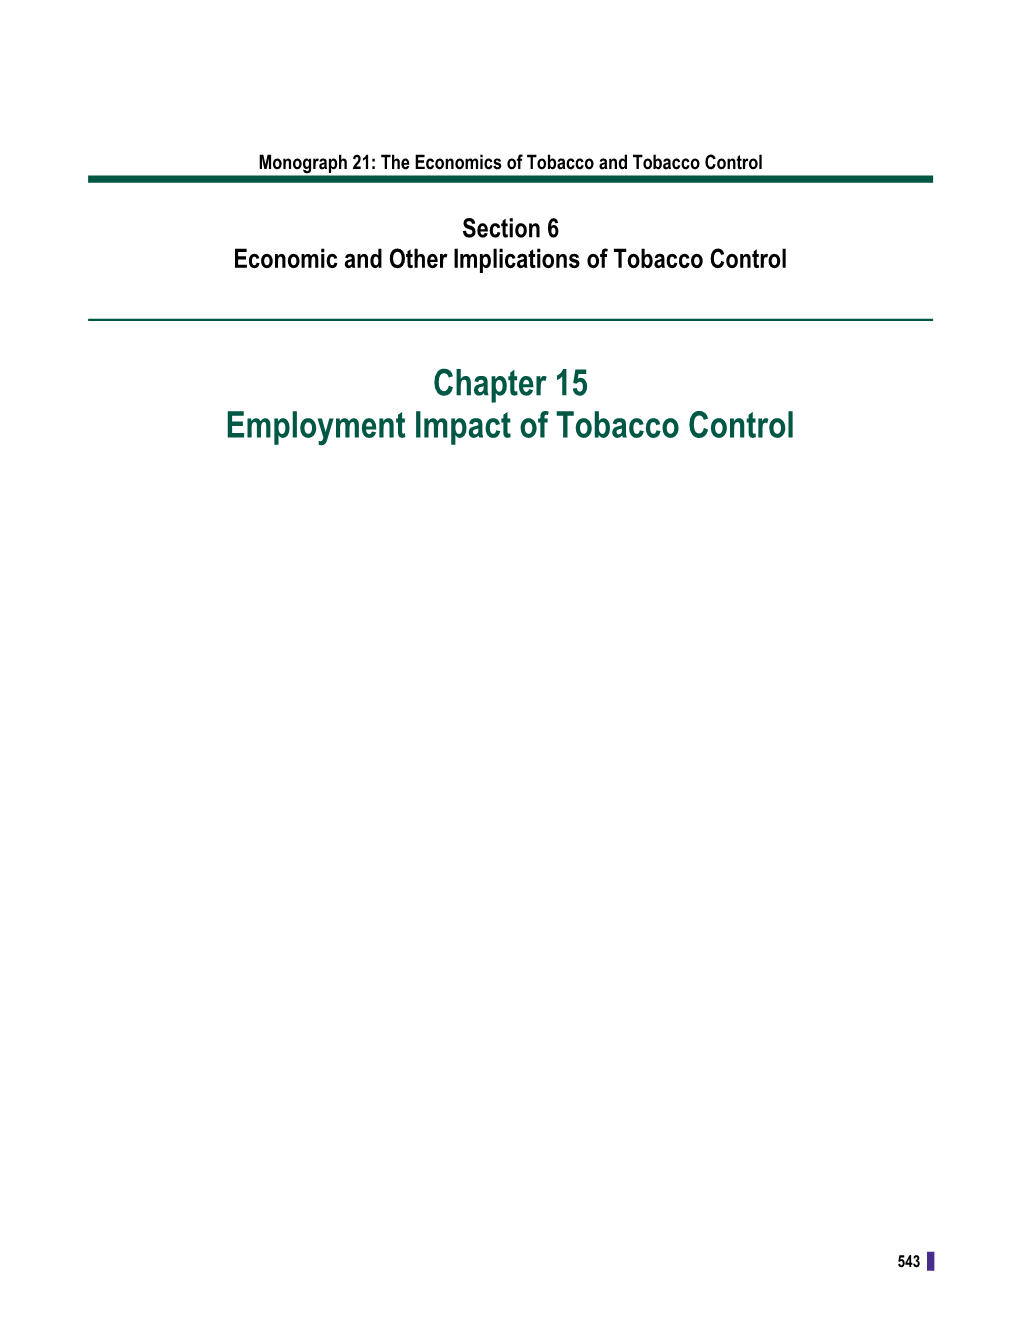 Monograph 21. the Economics of Tobacco and Tobacco Control